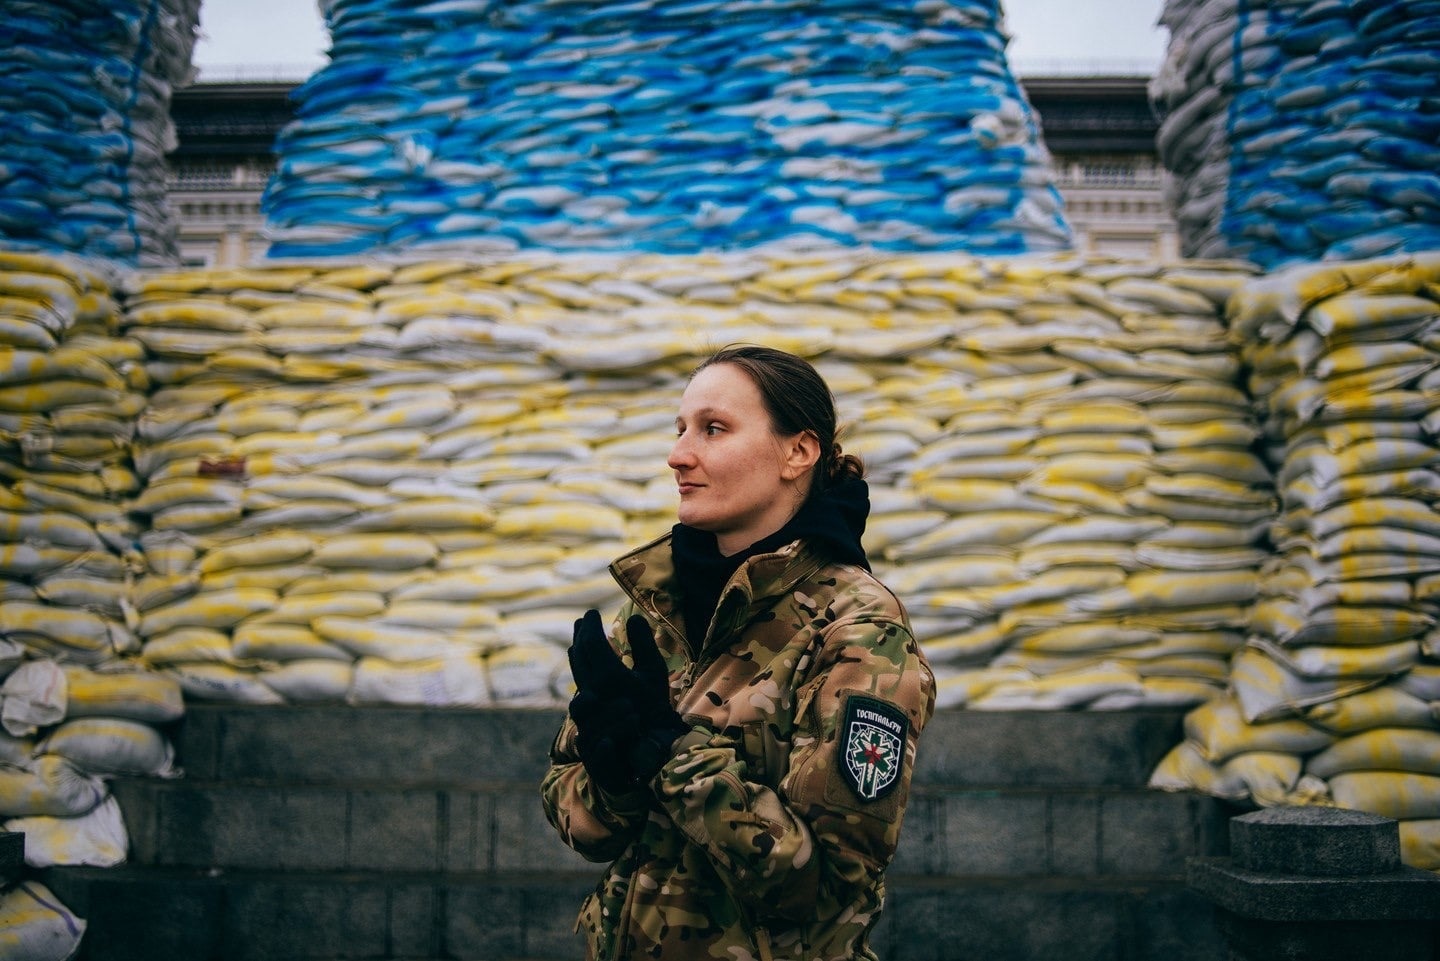 Κατάπαυση πυρός Ουκρανία – Ρωσία: Στα λόγια η εκεχειρία